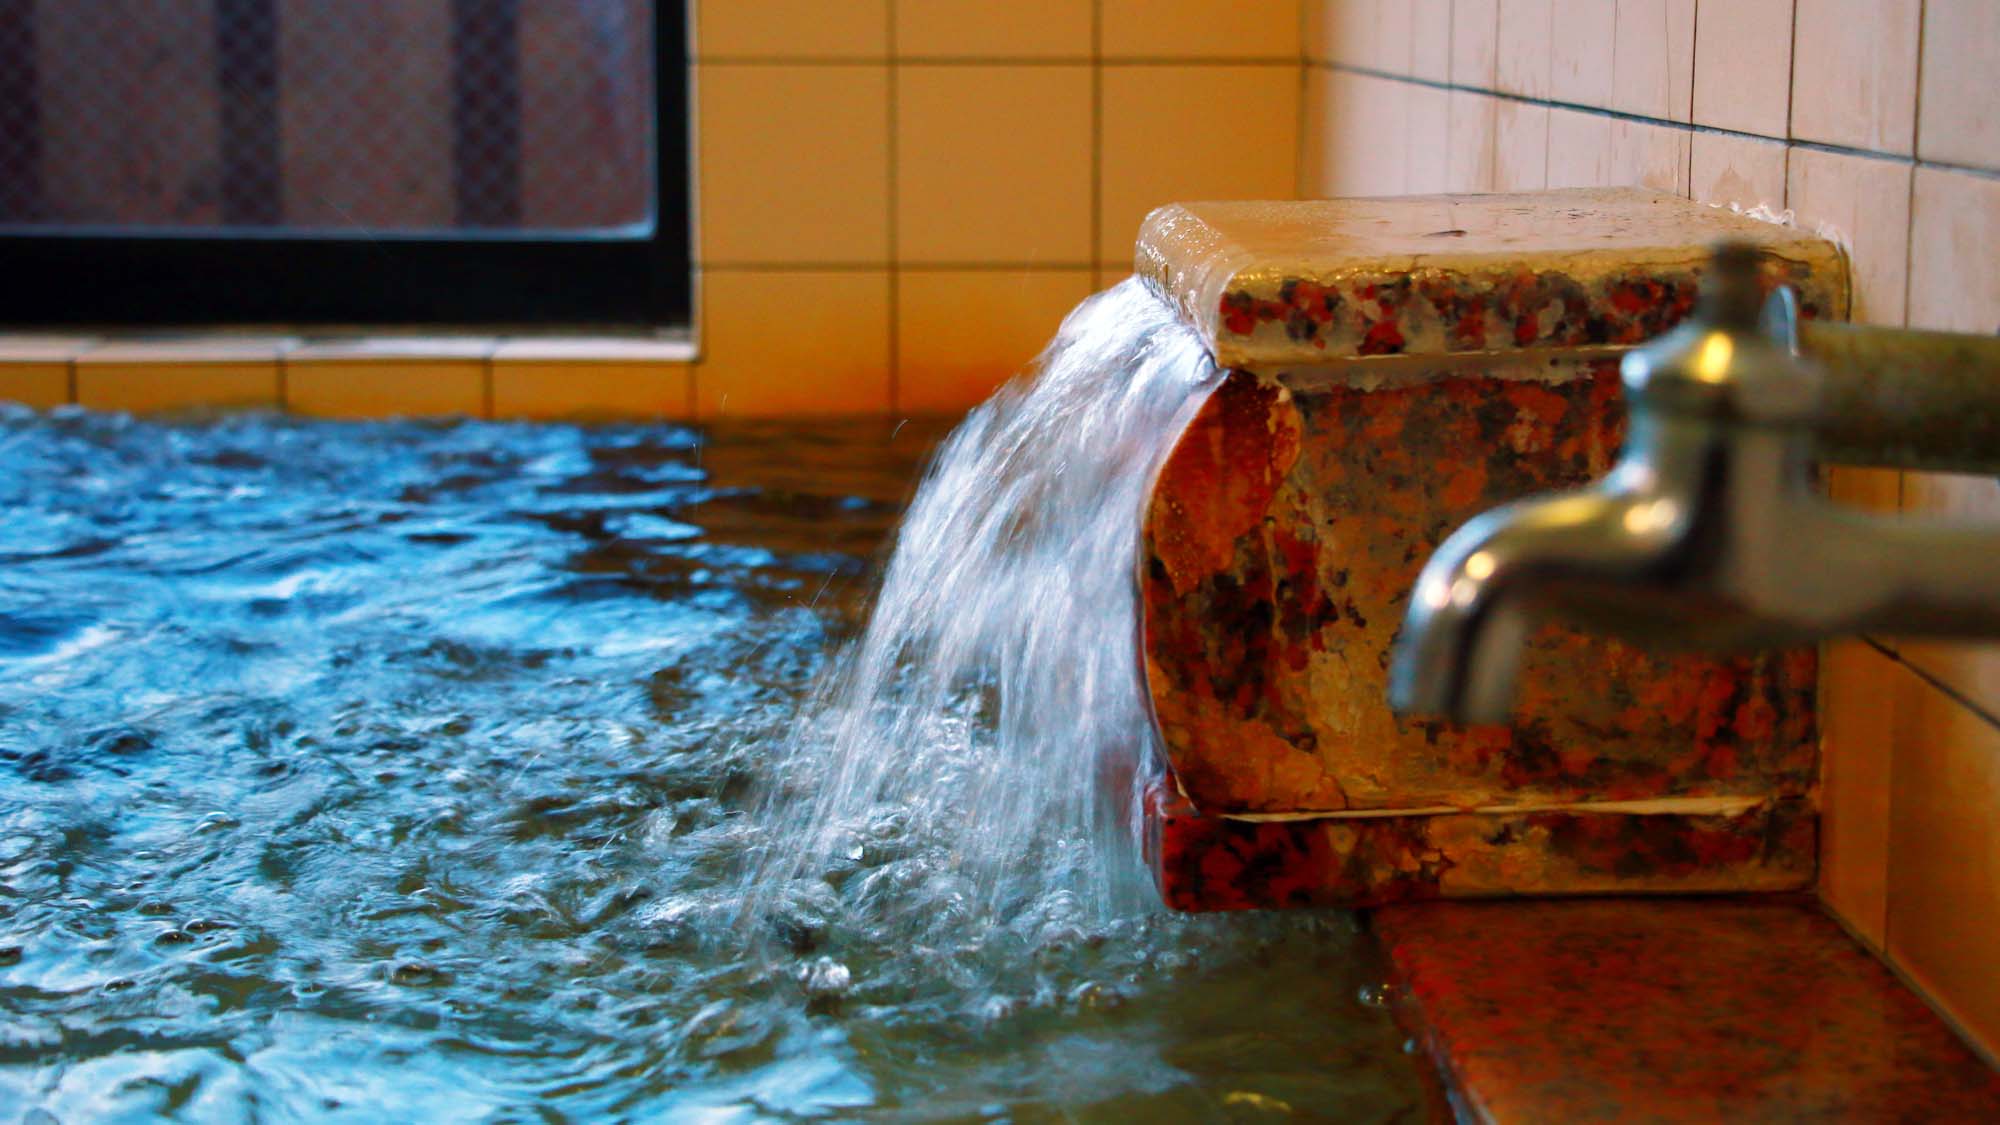 勢いよく流れる温泉は循環式で衛生面も安心